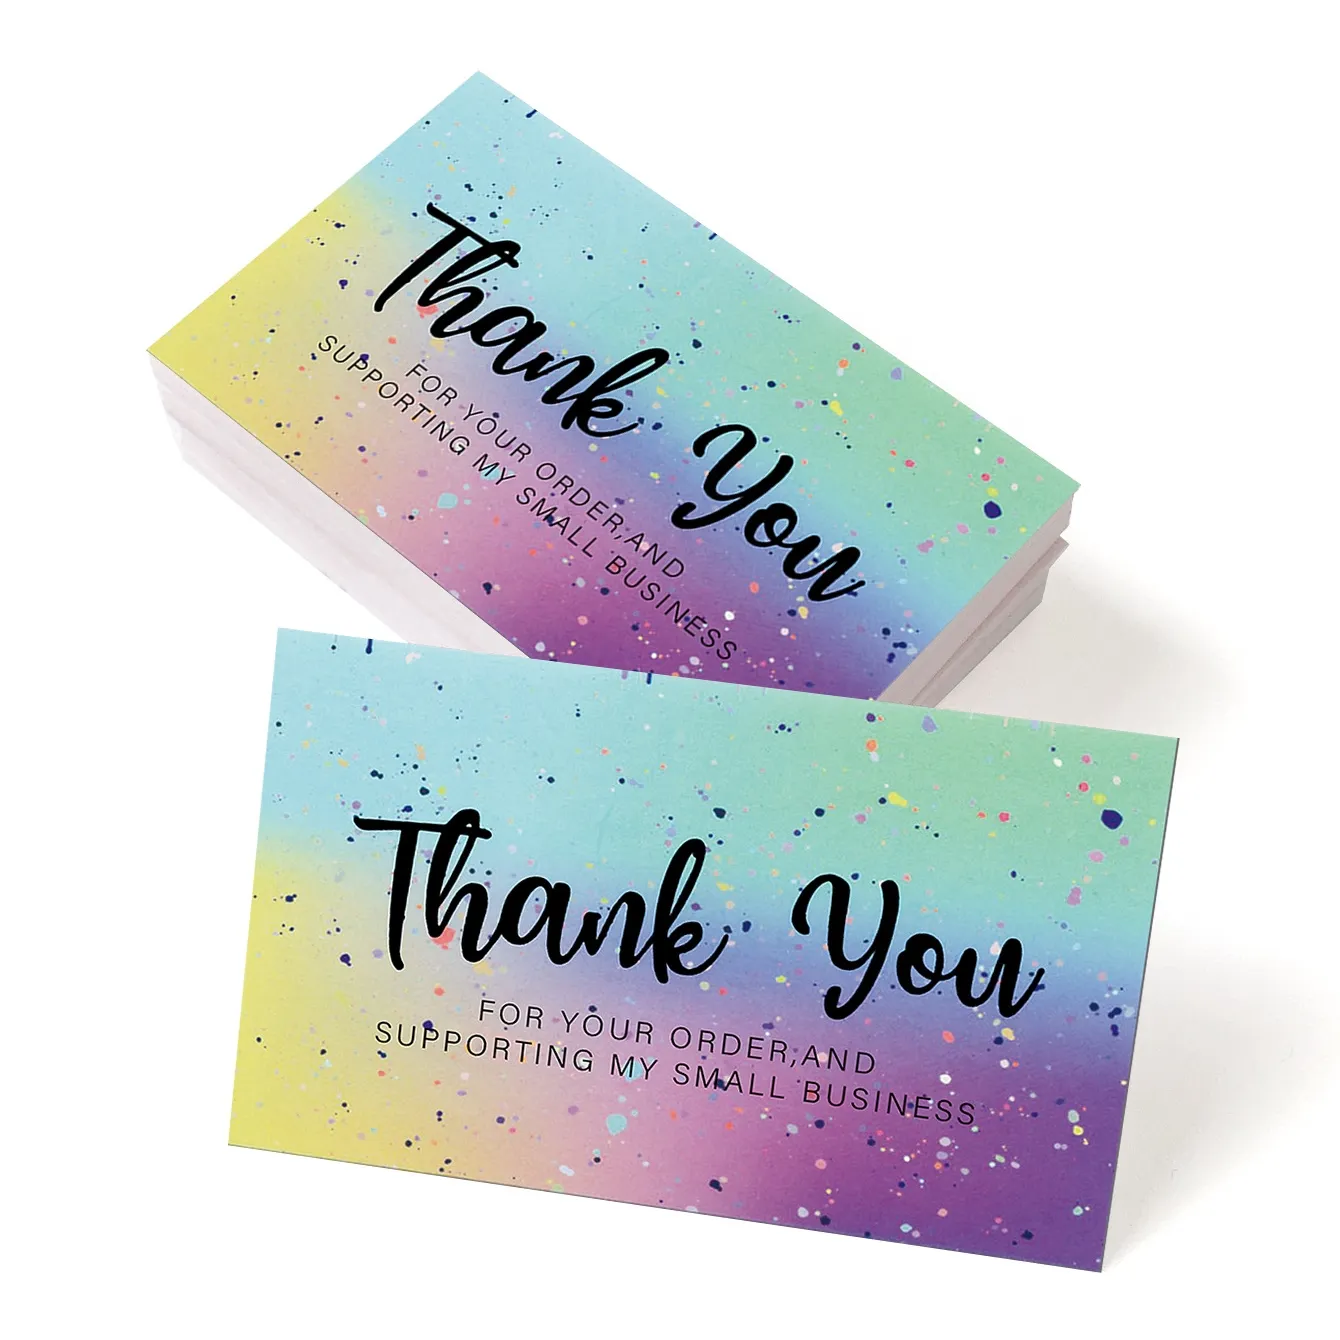 Paket cetak kartu ucapan bisnis mewah kualitas tinggi hadiah kartu Terima kasih untuk bisnis kecil